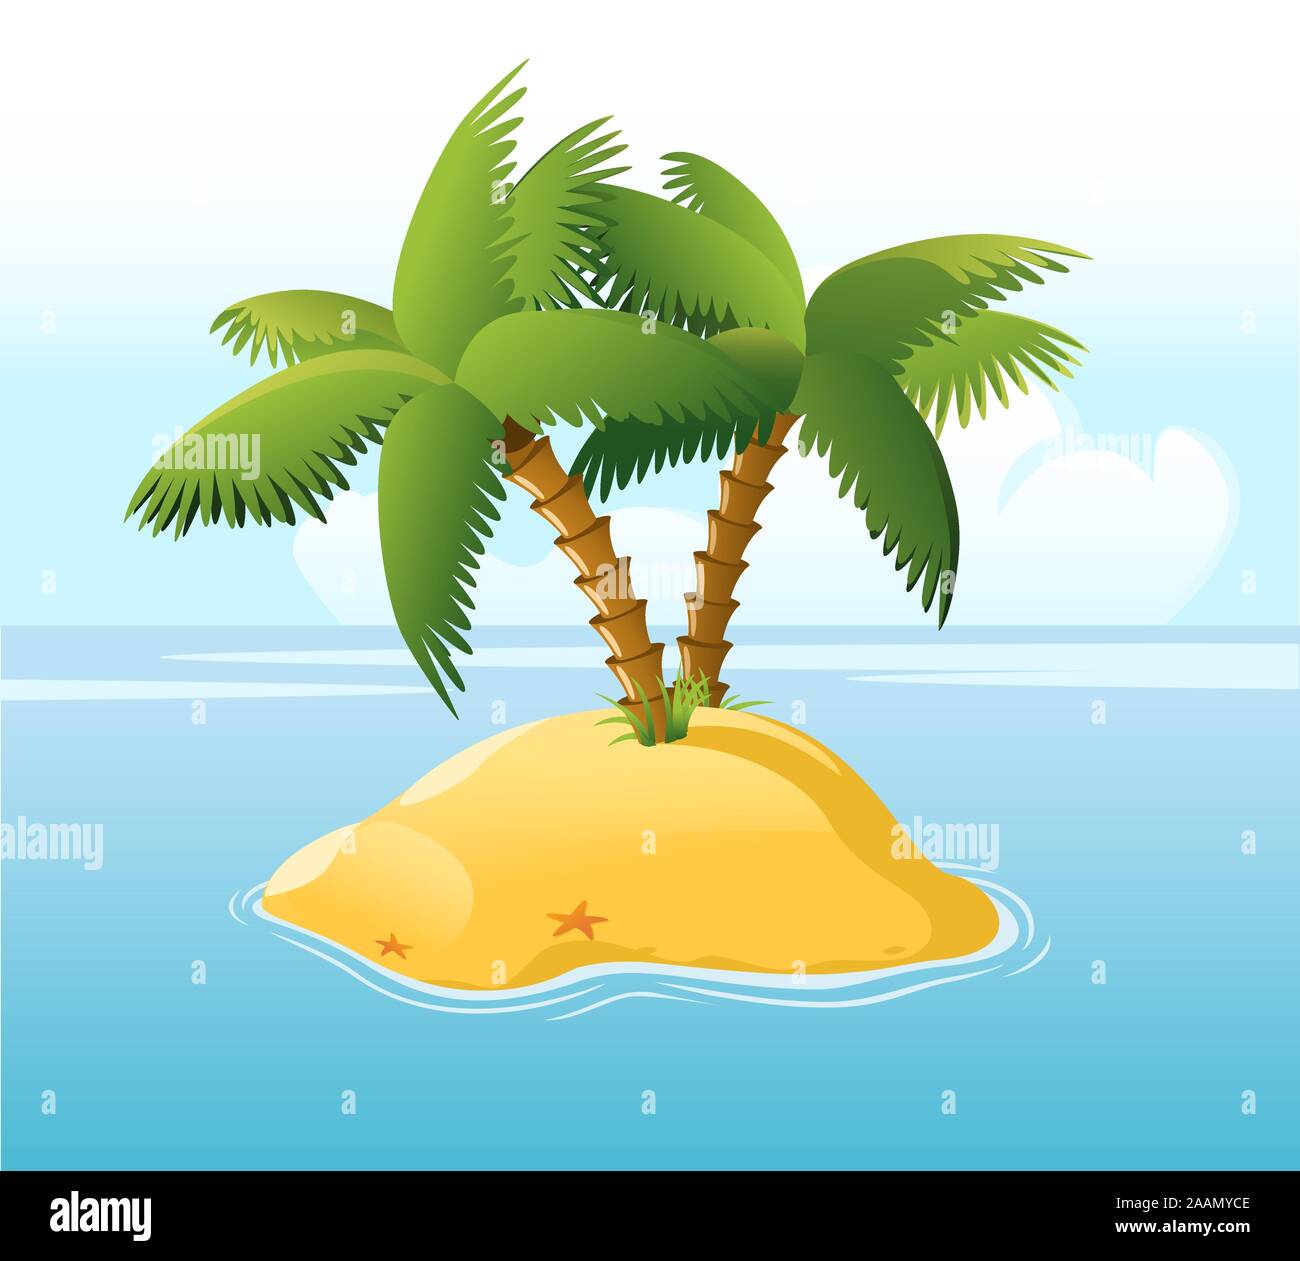 Einsame Insel mit Palmen, blauem Meer und Sterne Fischen umgeben, mit Stern Vector Illustration Cartoon. Stock Vektor